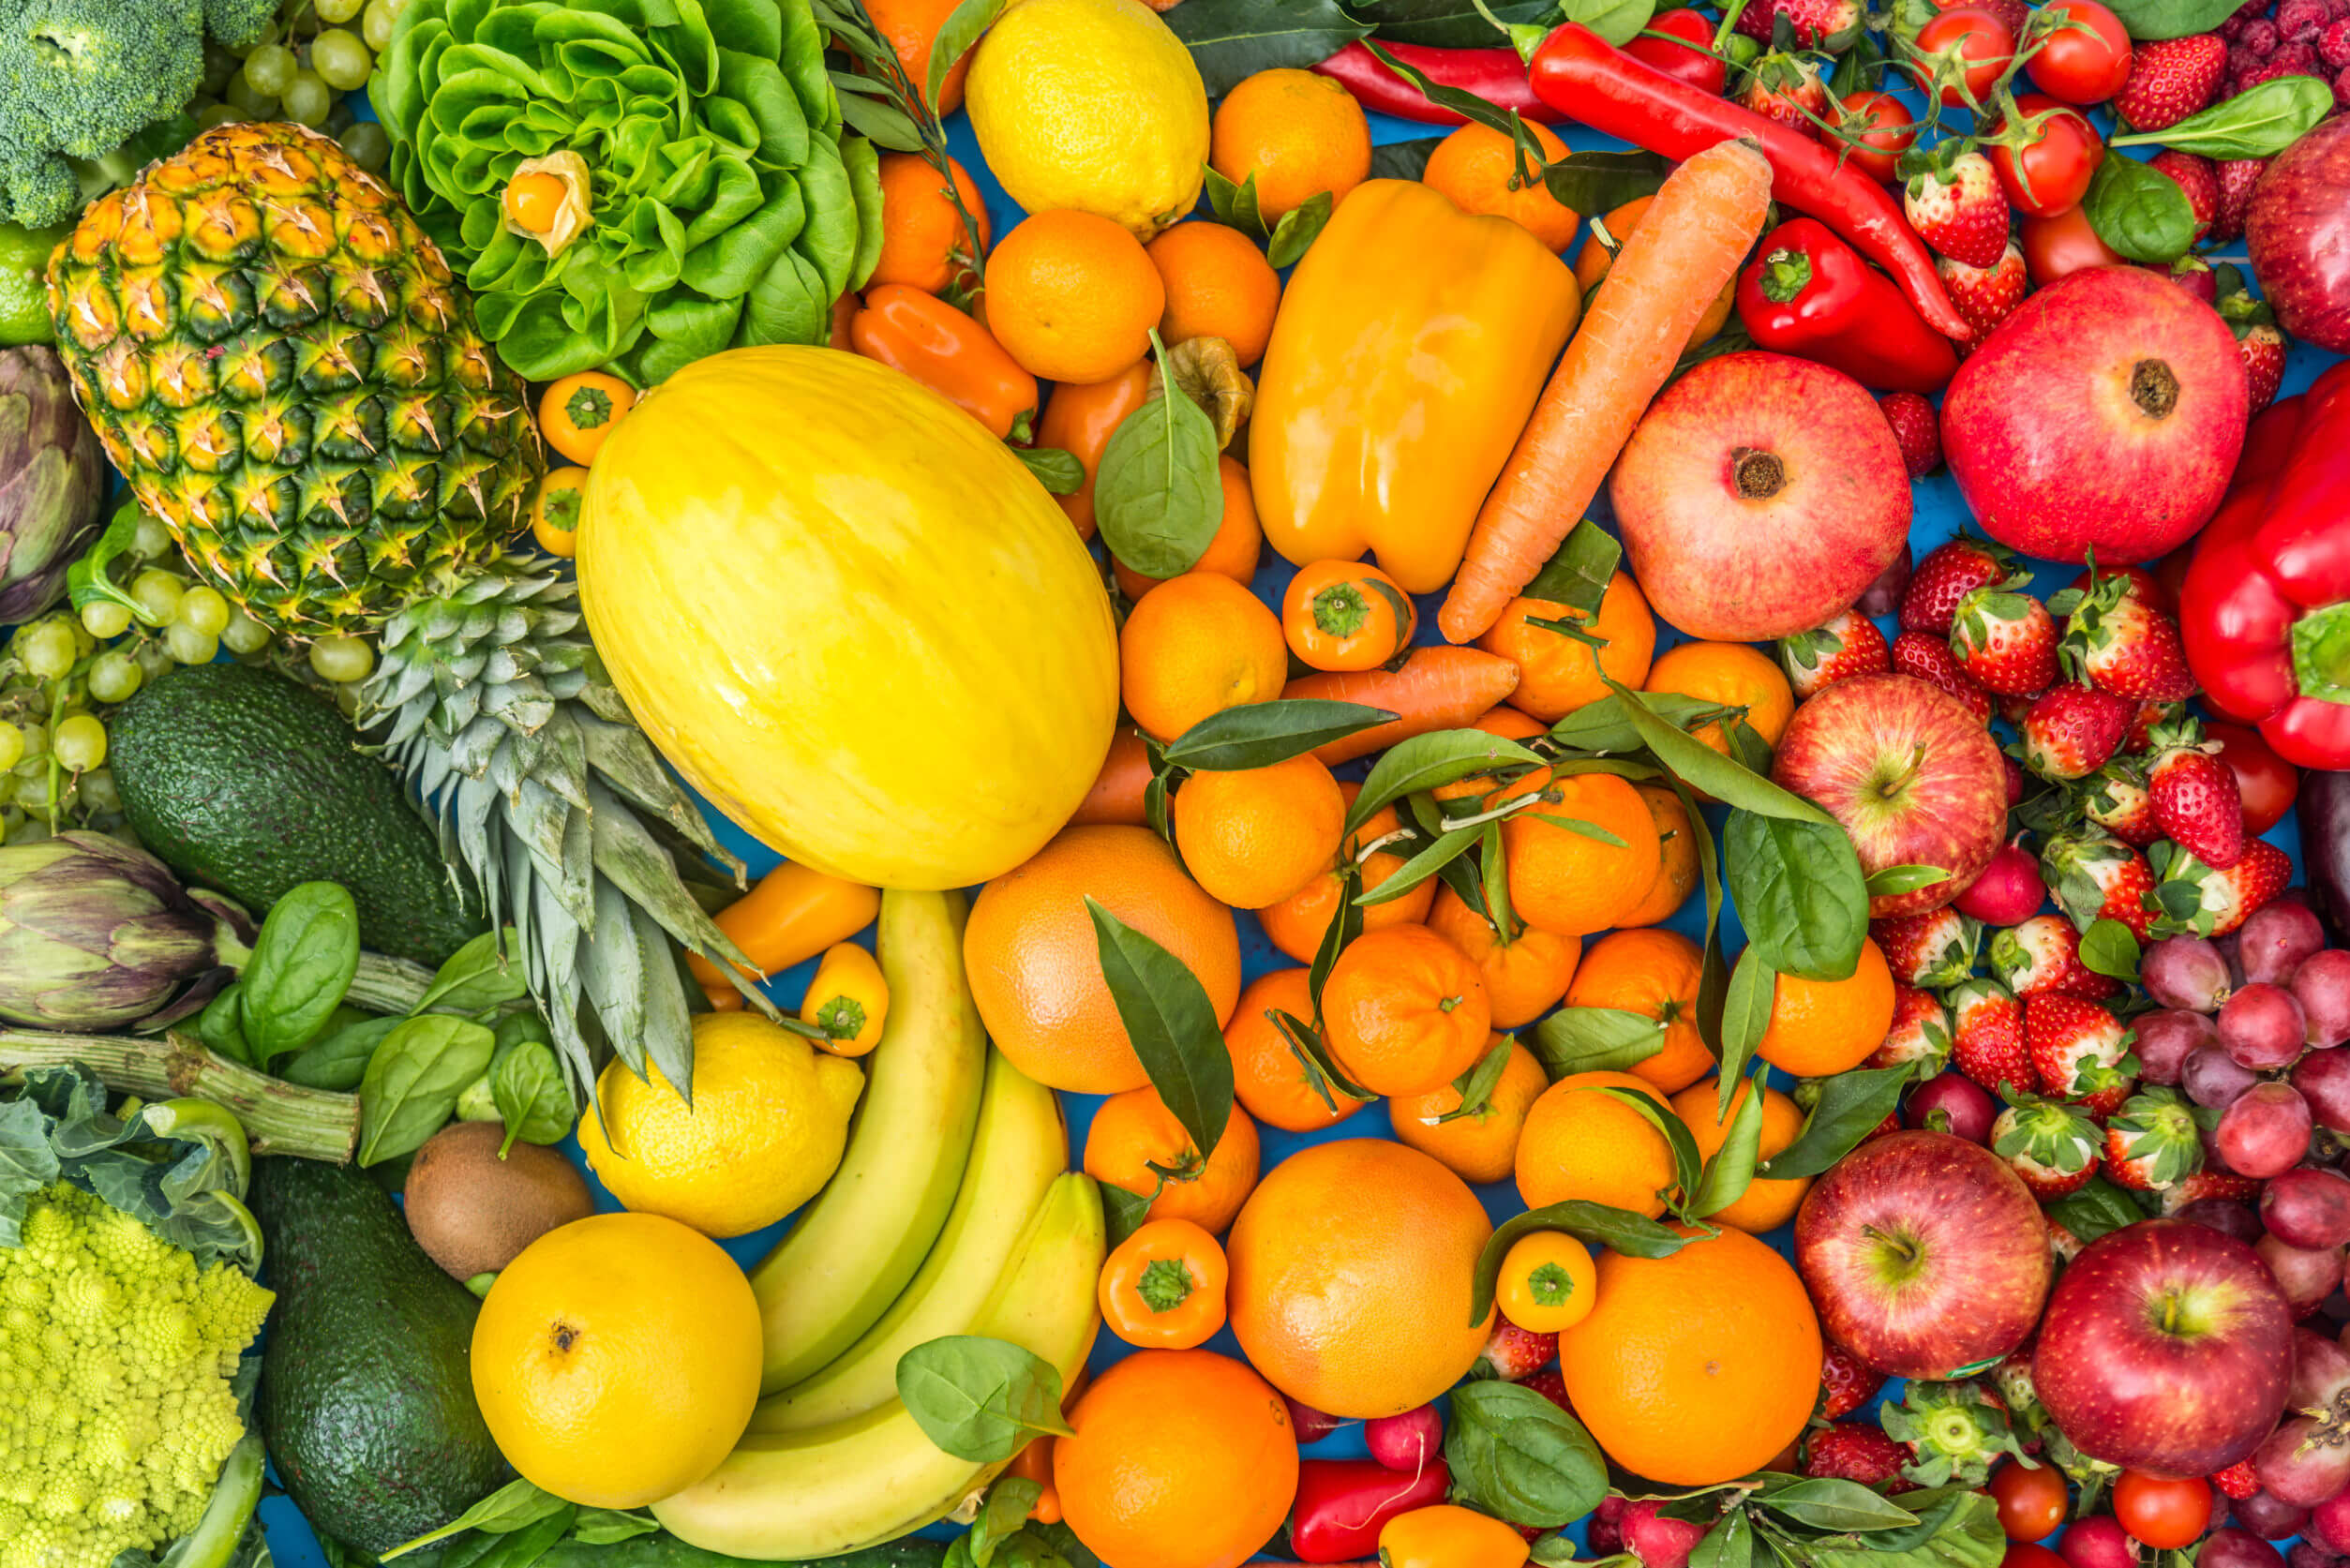 Marco de referencia petrolero Barbero La mezcla de frutas y verduras «5 al día» aumenta la expectativa de vida,  según un estudio